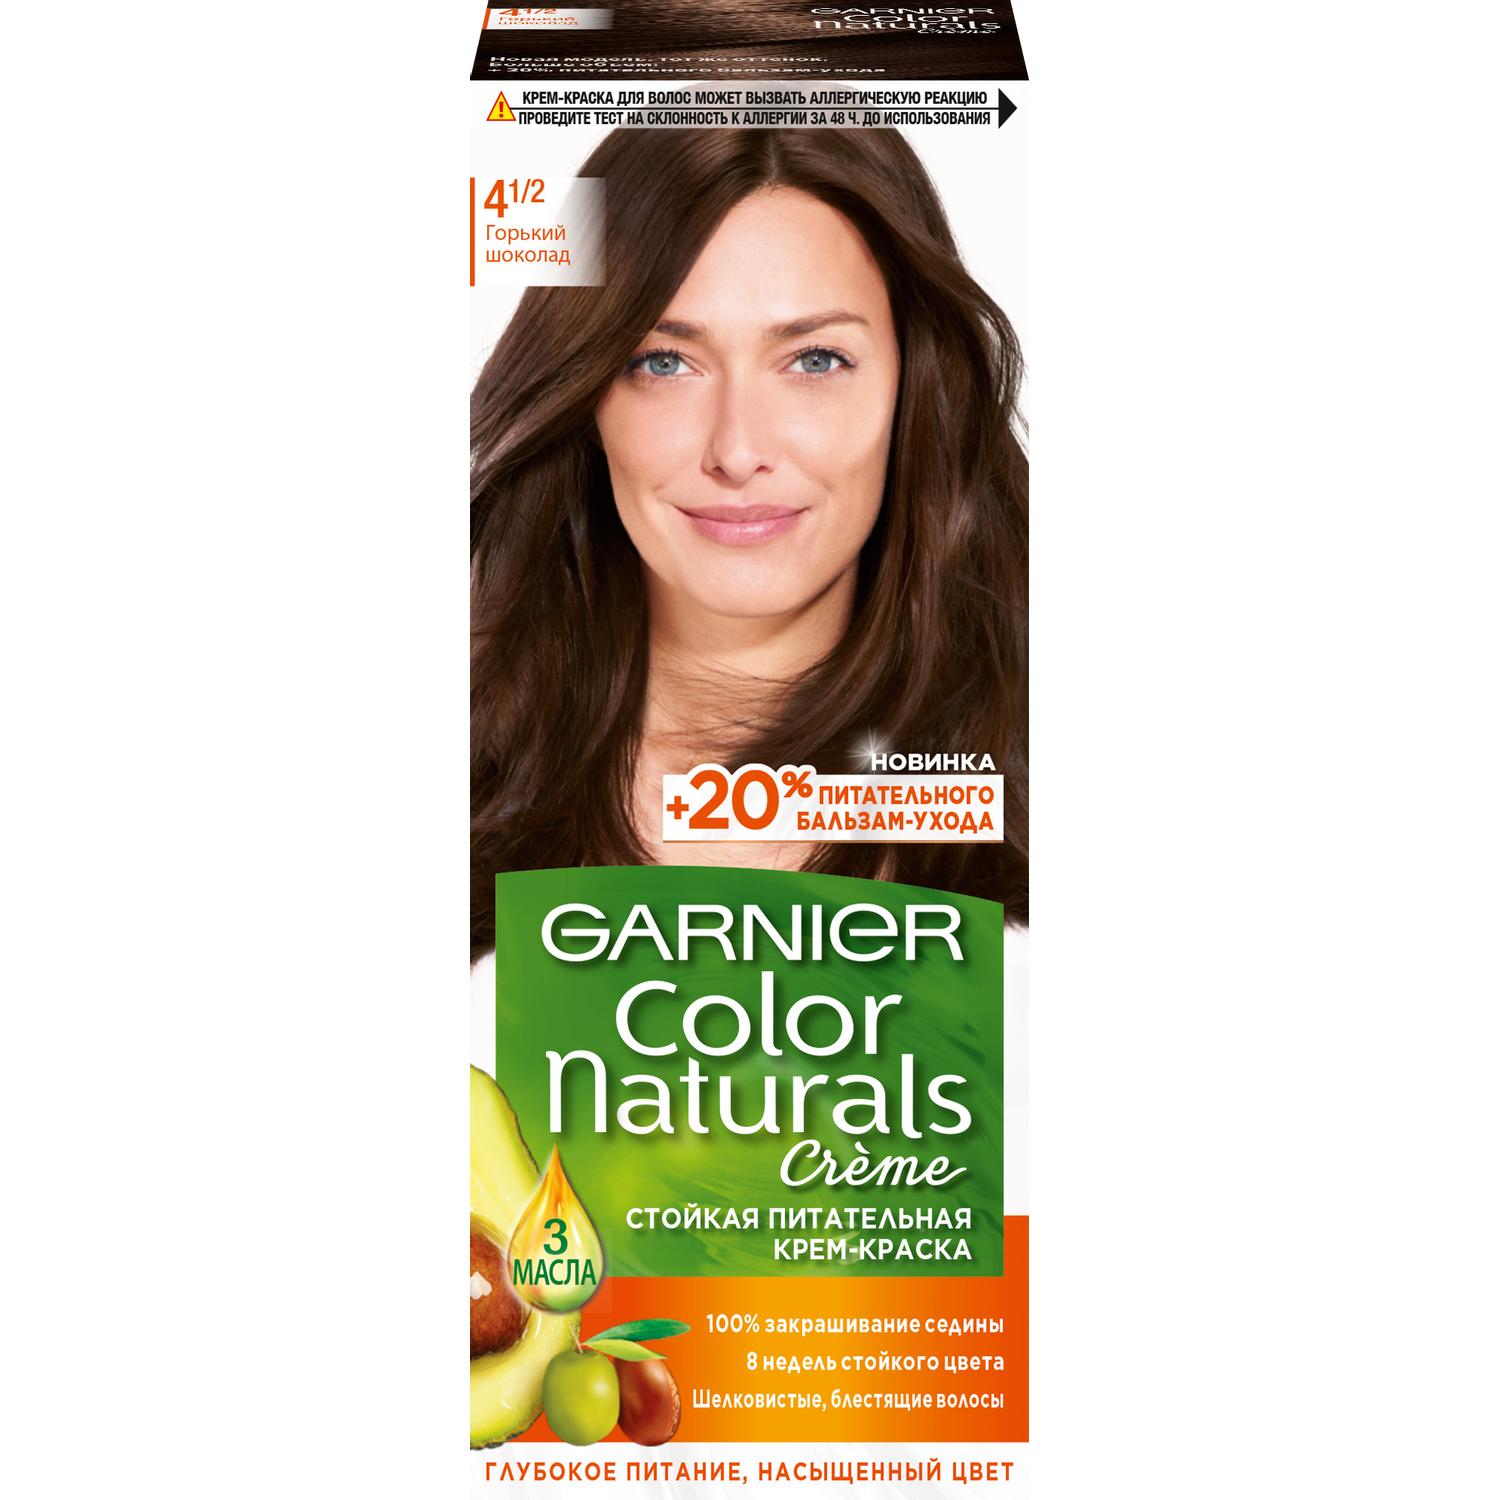 Крем-краска для волос Garnier Color Naturals 4.1/2 Горький Шоколад 110 мл крем краска для волос garnier color naturals 4 1 2 горький шоколад 110 мл